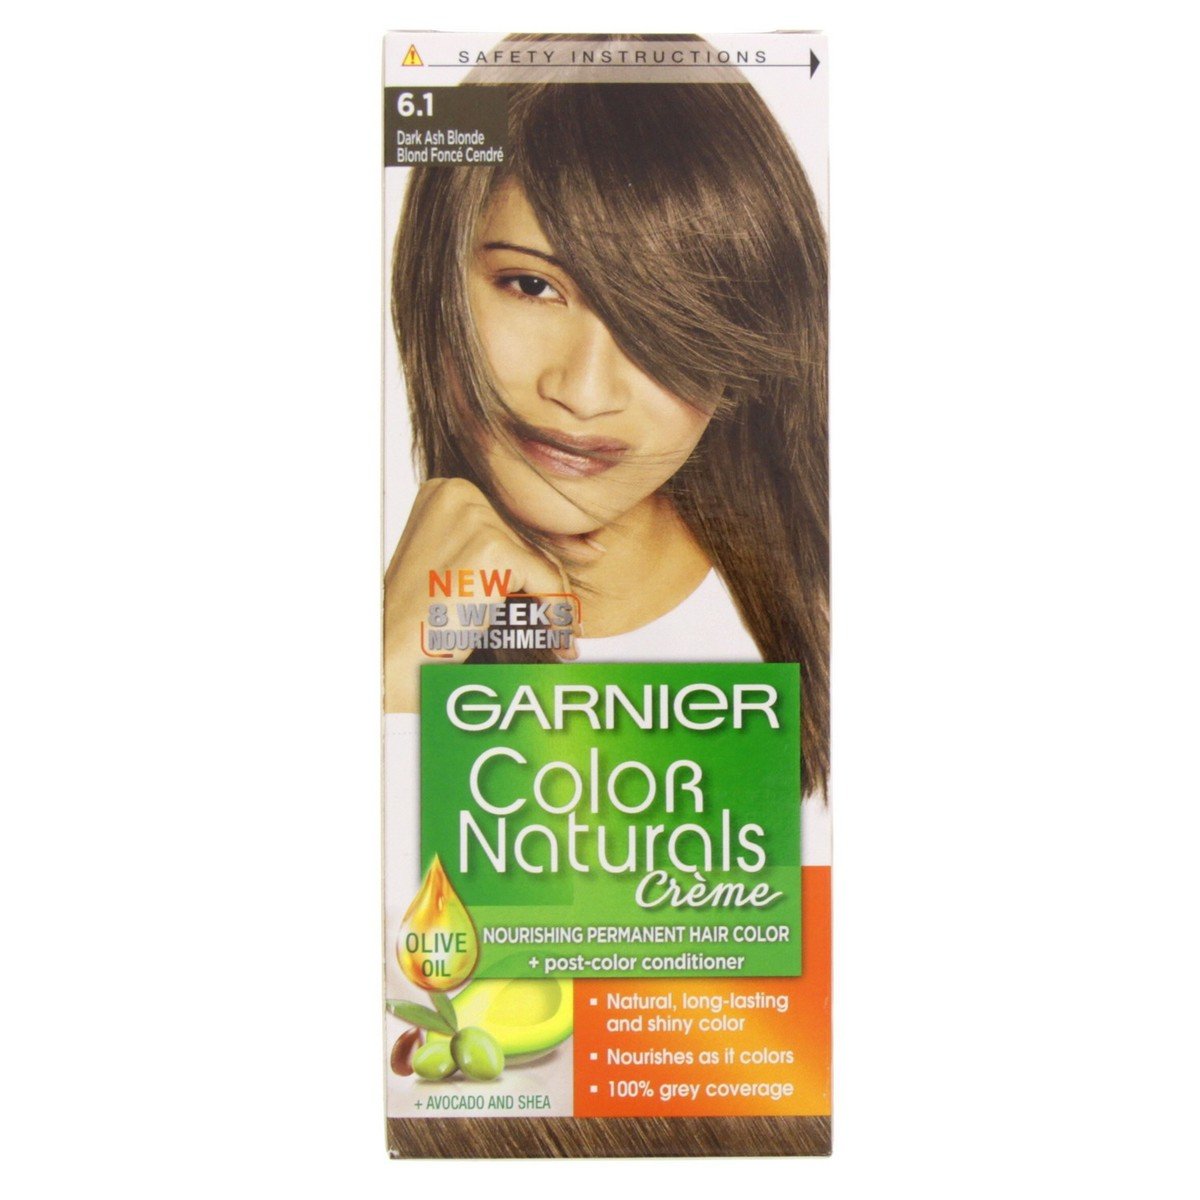 Garnier Colour Naturals 6.1 Dark Ash Blonde 1 pkt